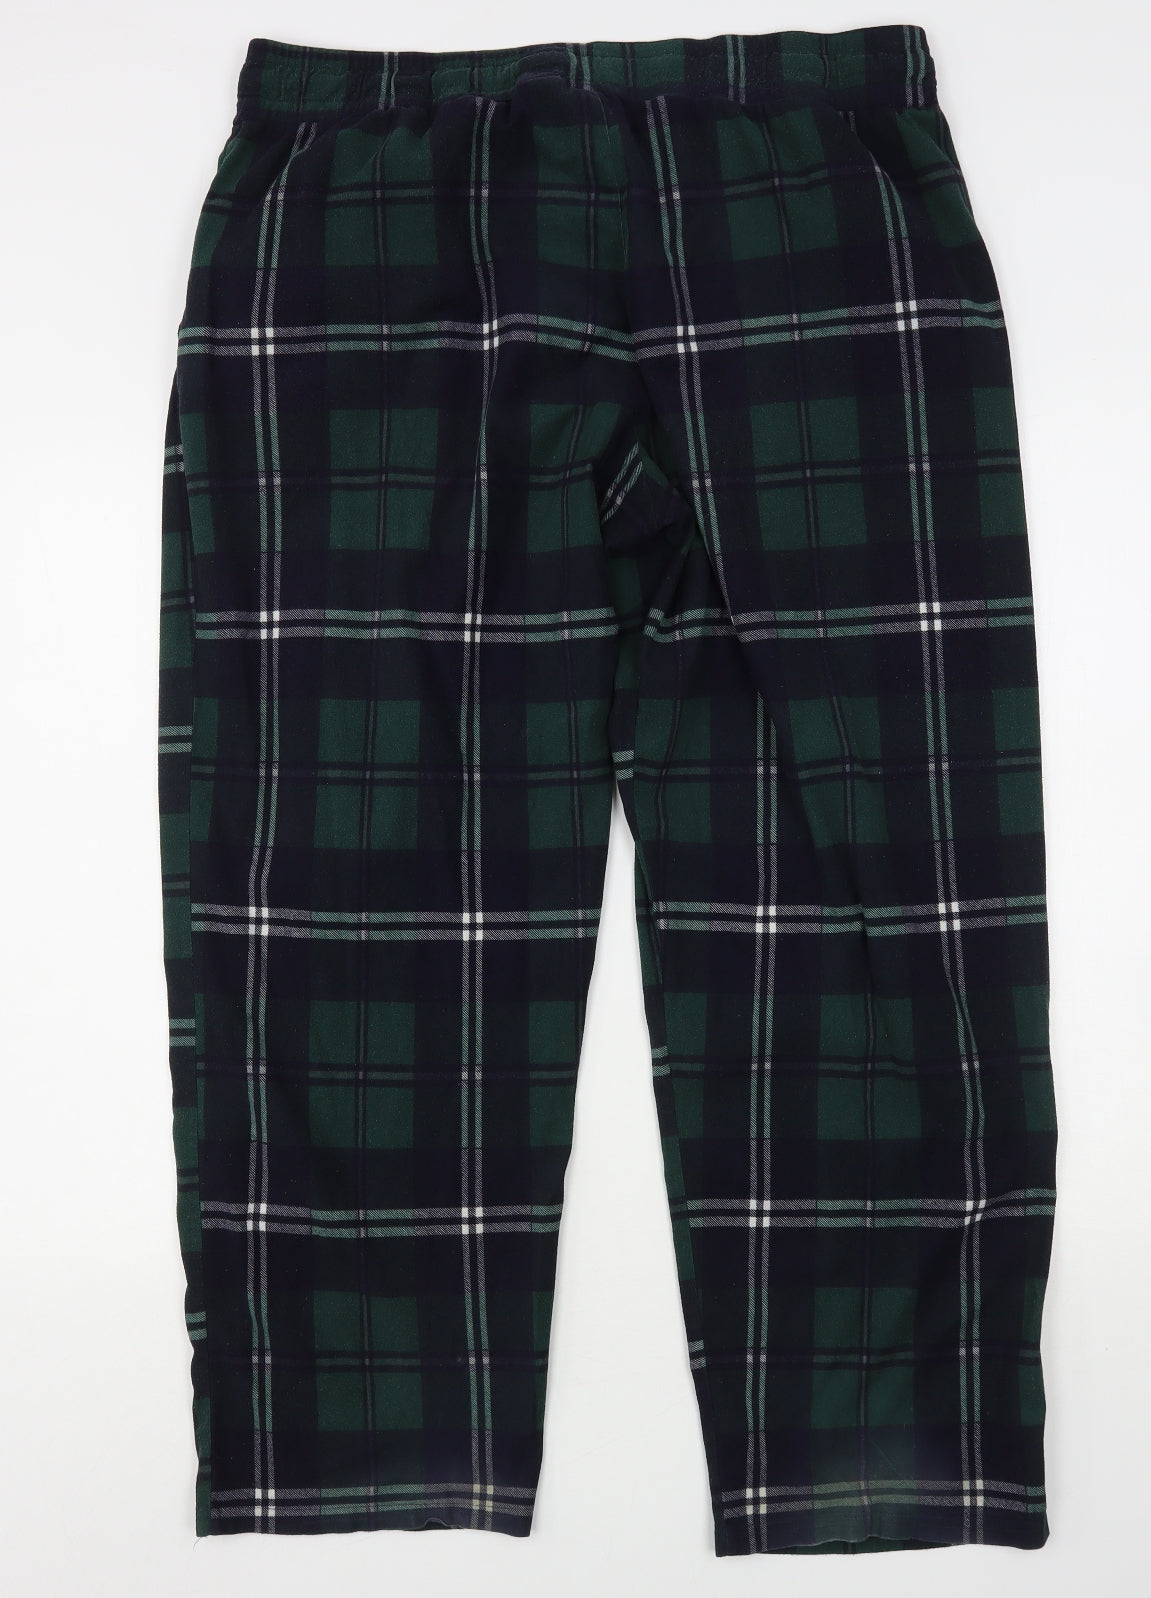 F&F Mens Green Plaid Polyester Pyjama Pants Size XL – Preworn Ltd